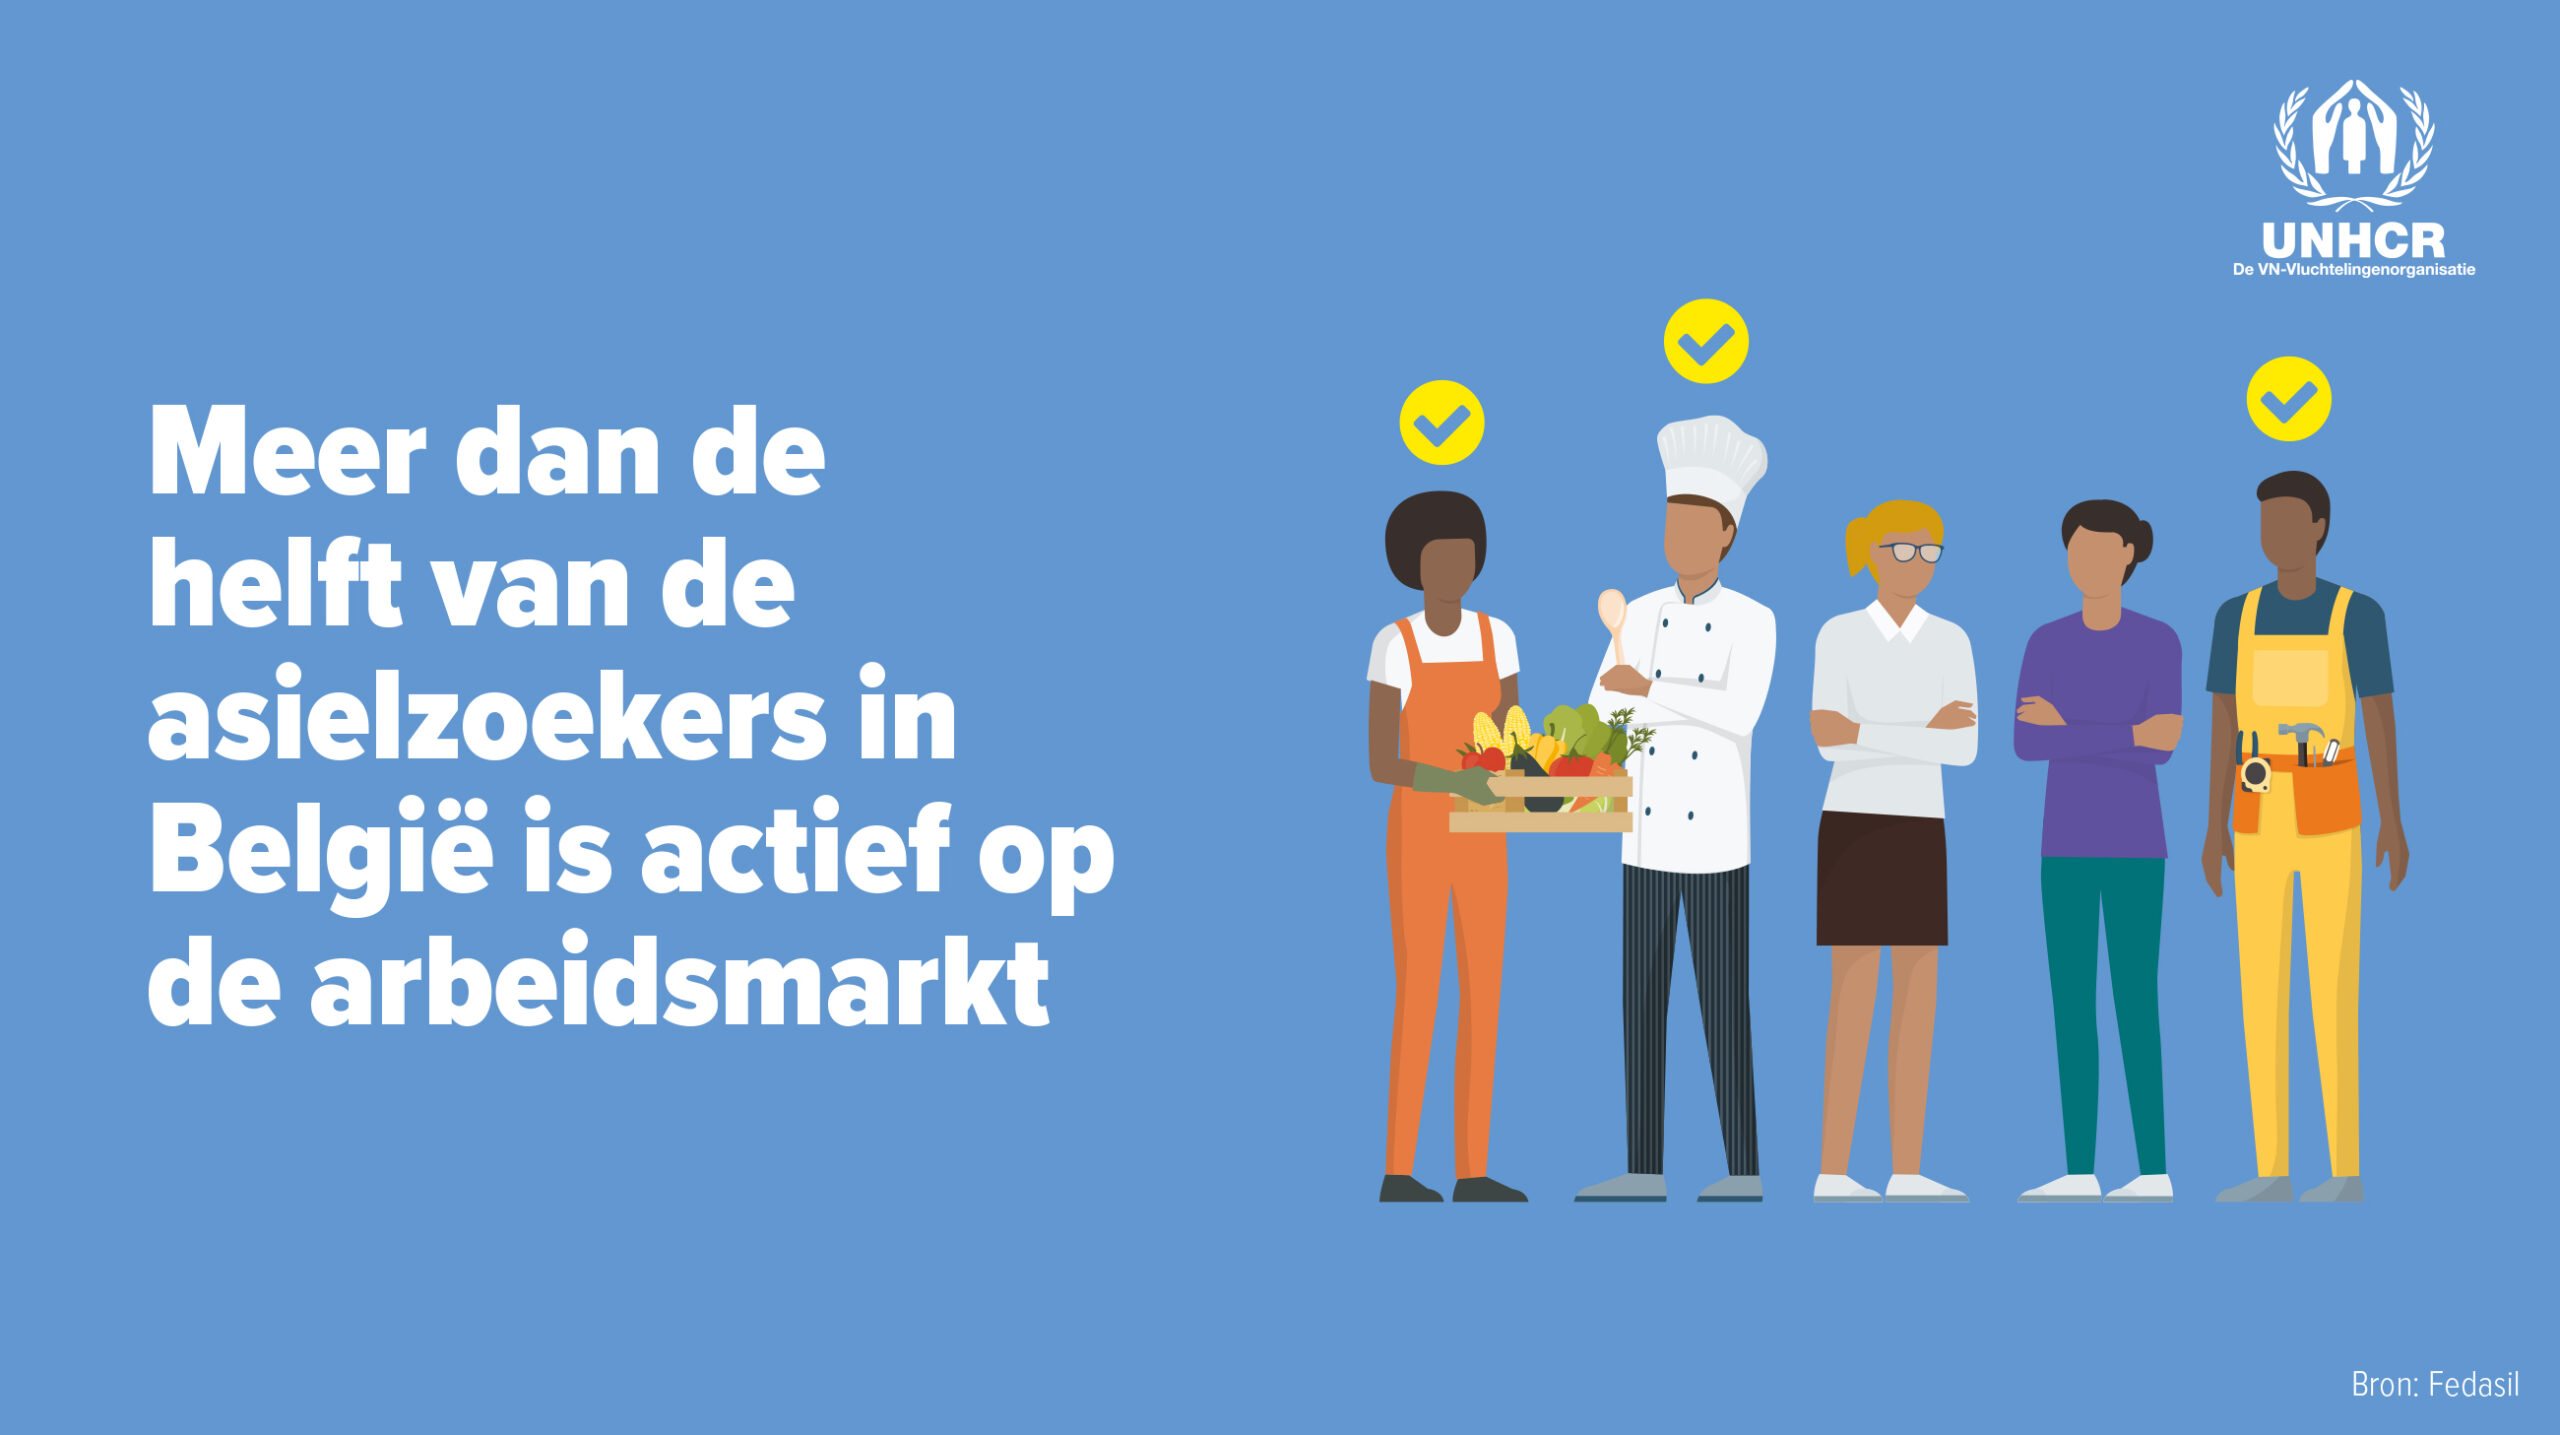 Neen, meer dan de helft van de asielzoekers in België is actief op de arbeidsmarkt.